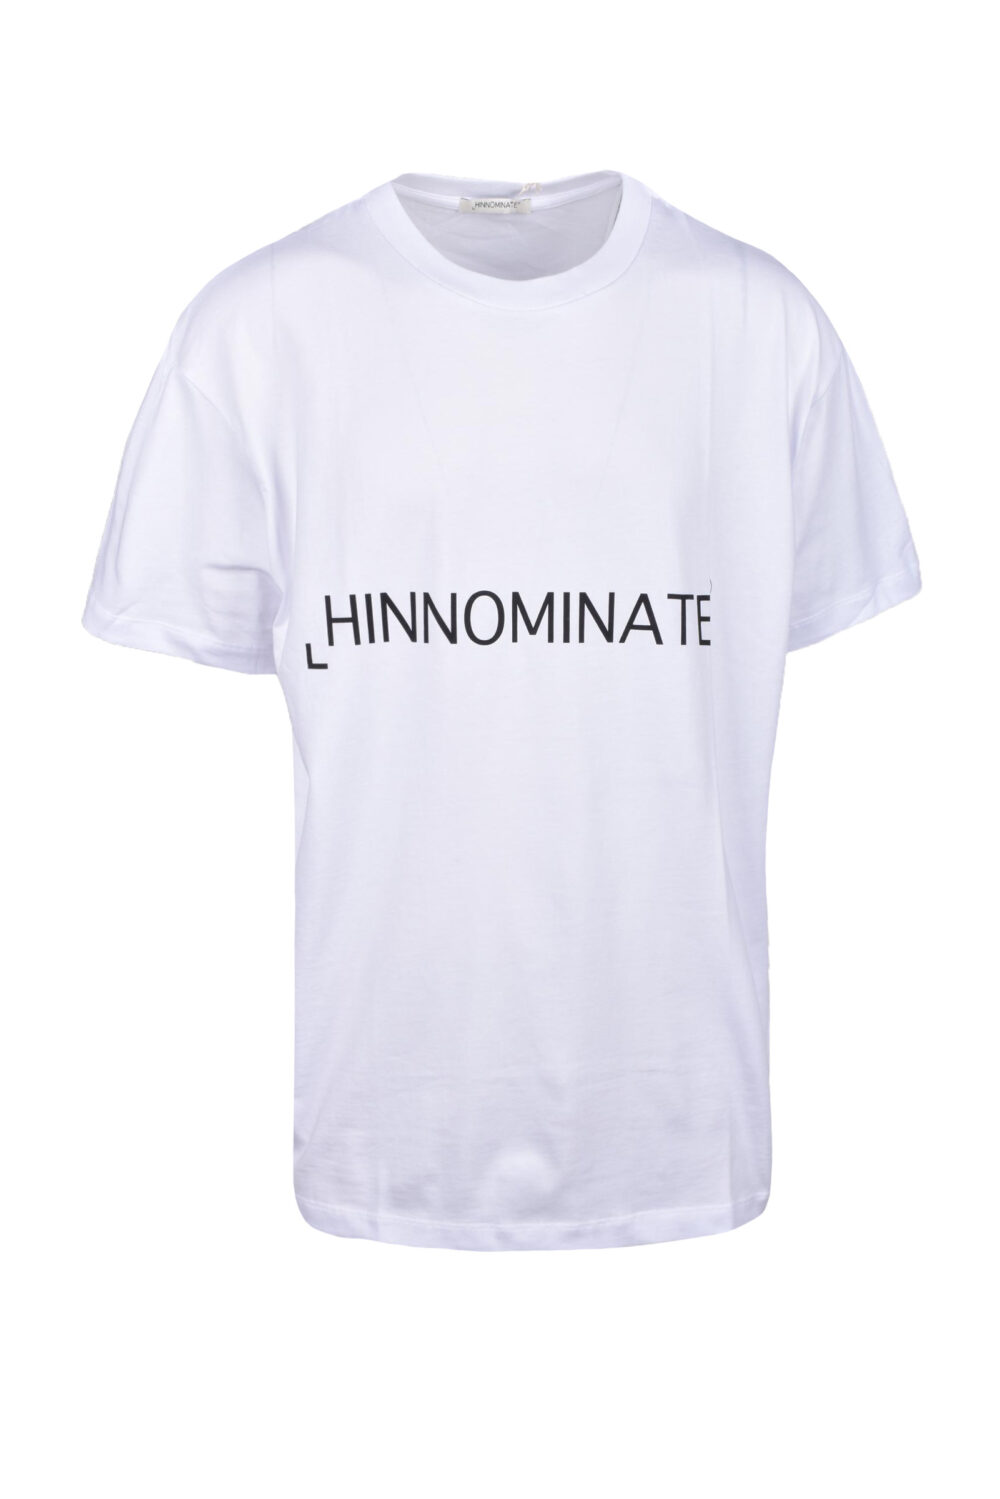 T-shirt Hinnominate Bianco - Foto 1